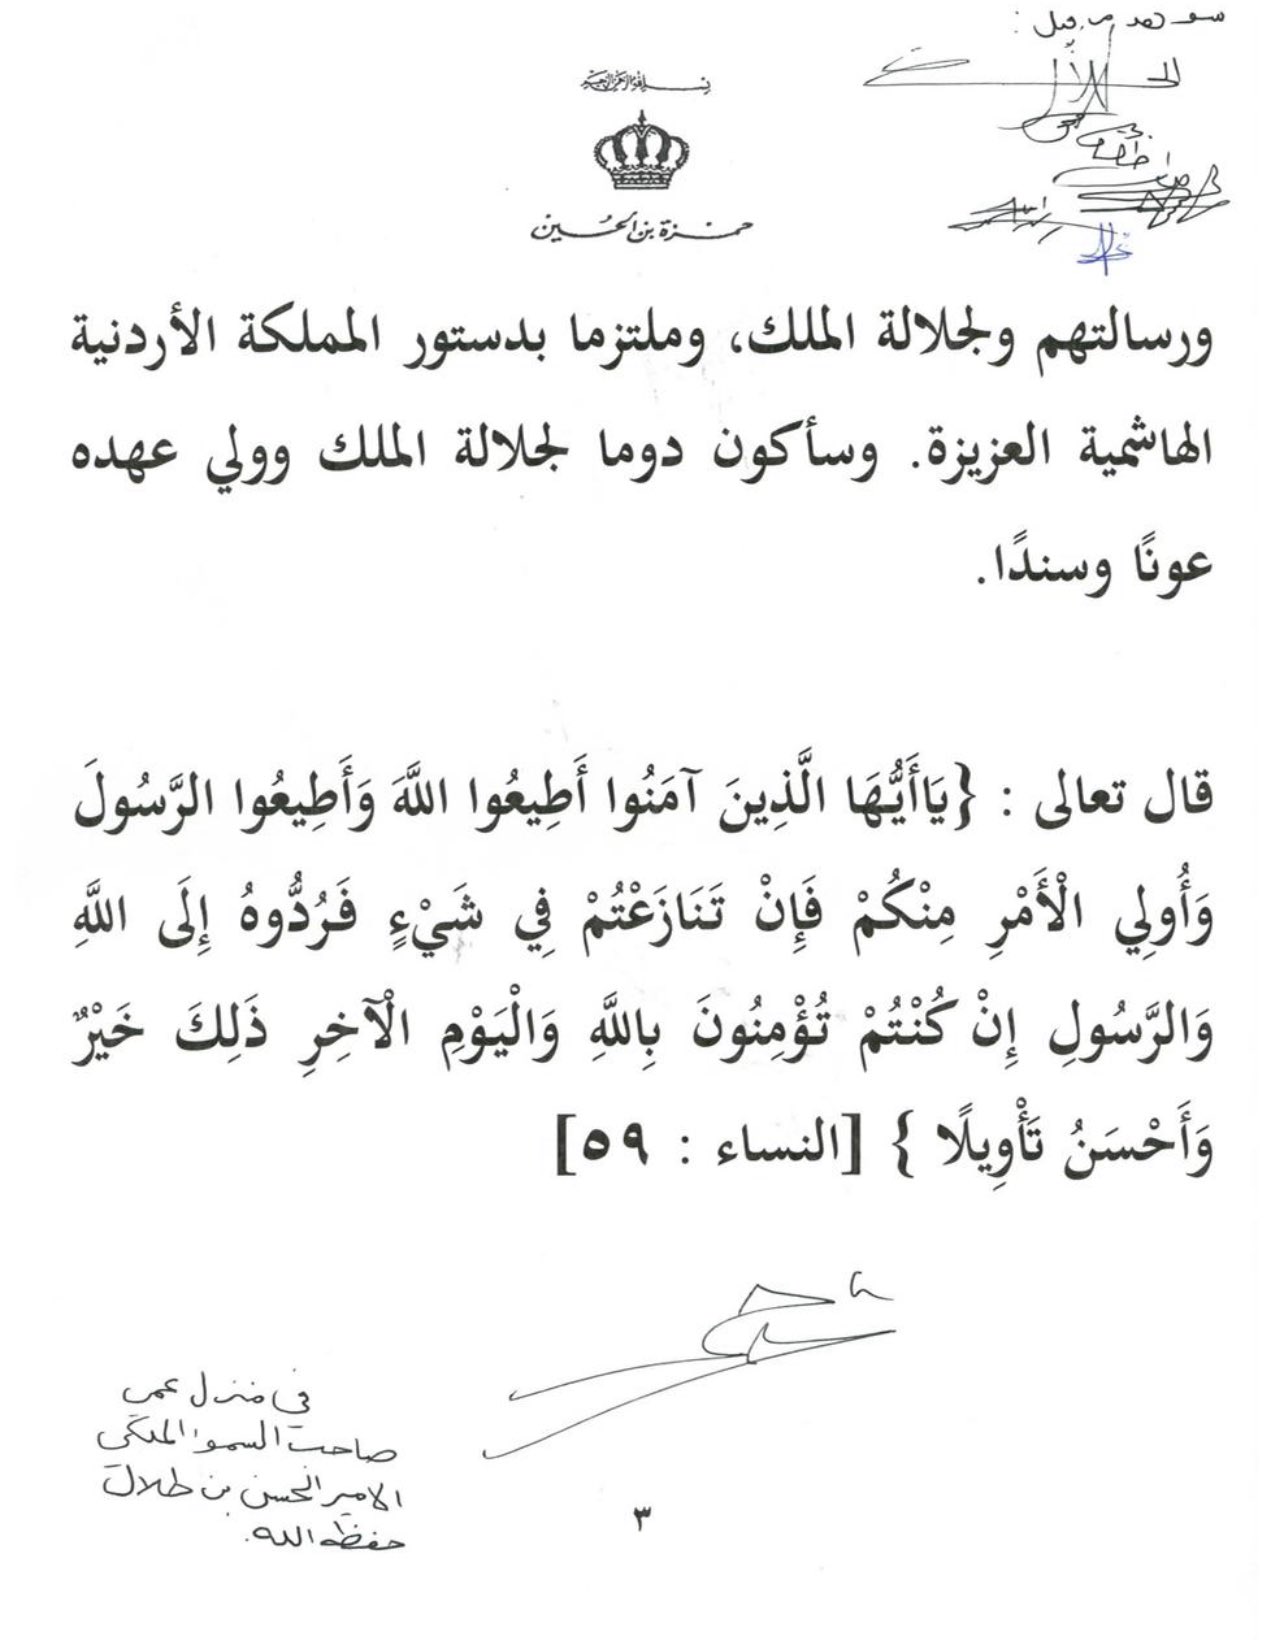 "واشنطن بوست": سلطات الأردن اعتقلت الأمير حمزة بن الحسين و20 آخرين بتهمة تهديد الاستقرار EyO0OKNWYAomvti?format=jpg&name=large